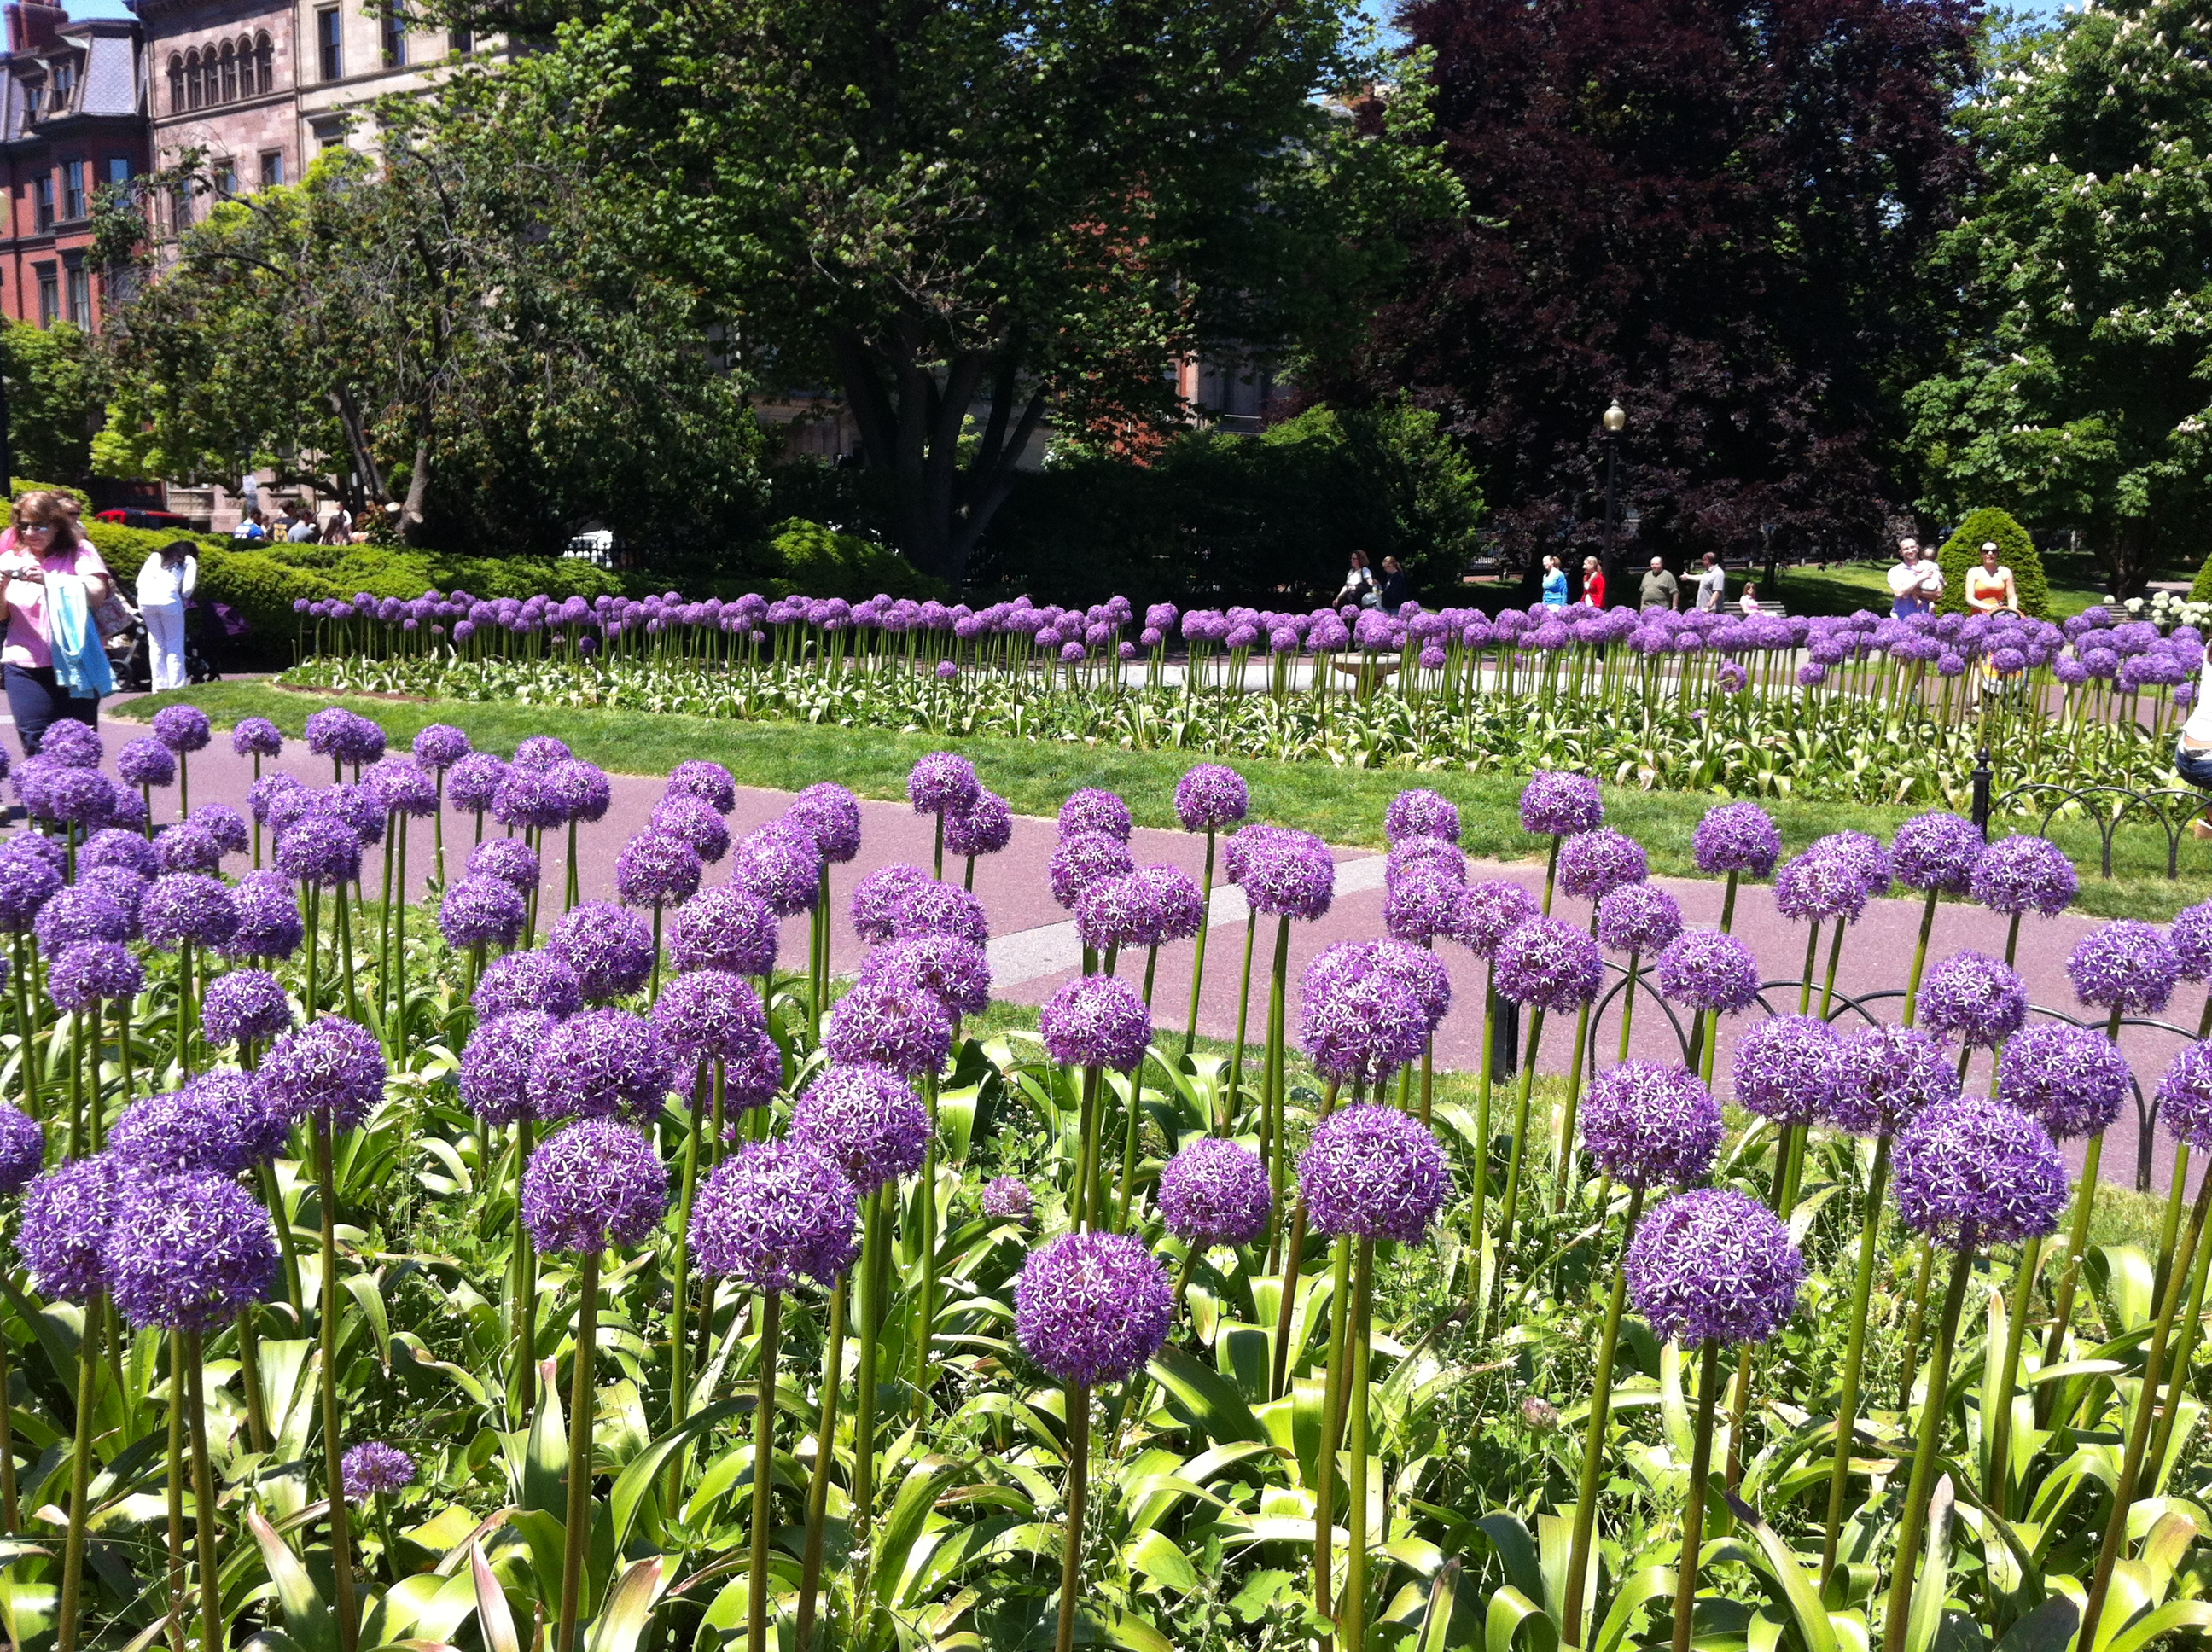 Lollipop flowers in Boston Public Gardens | beanboston